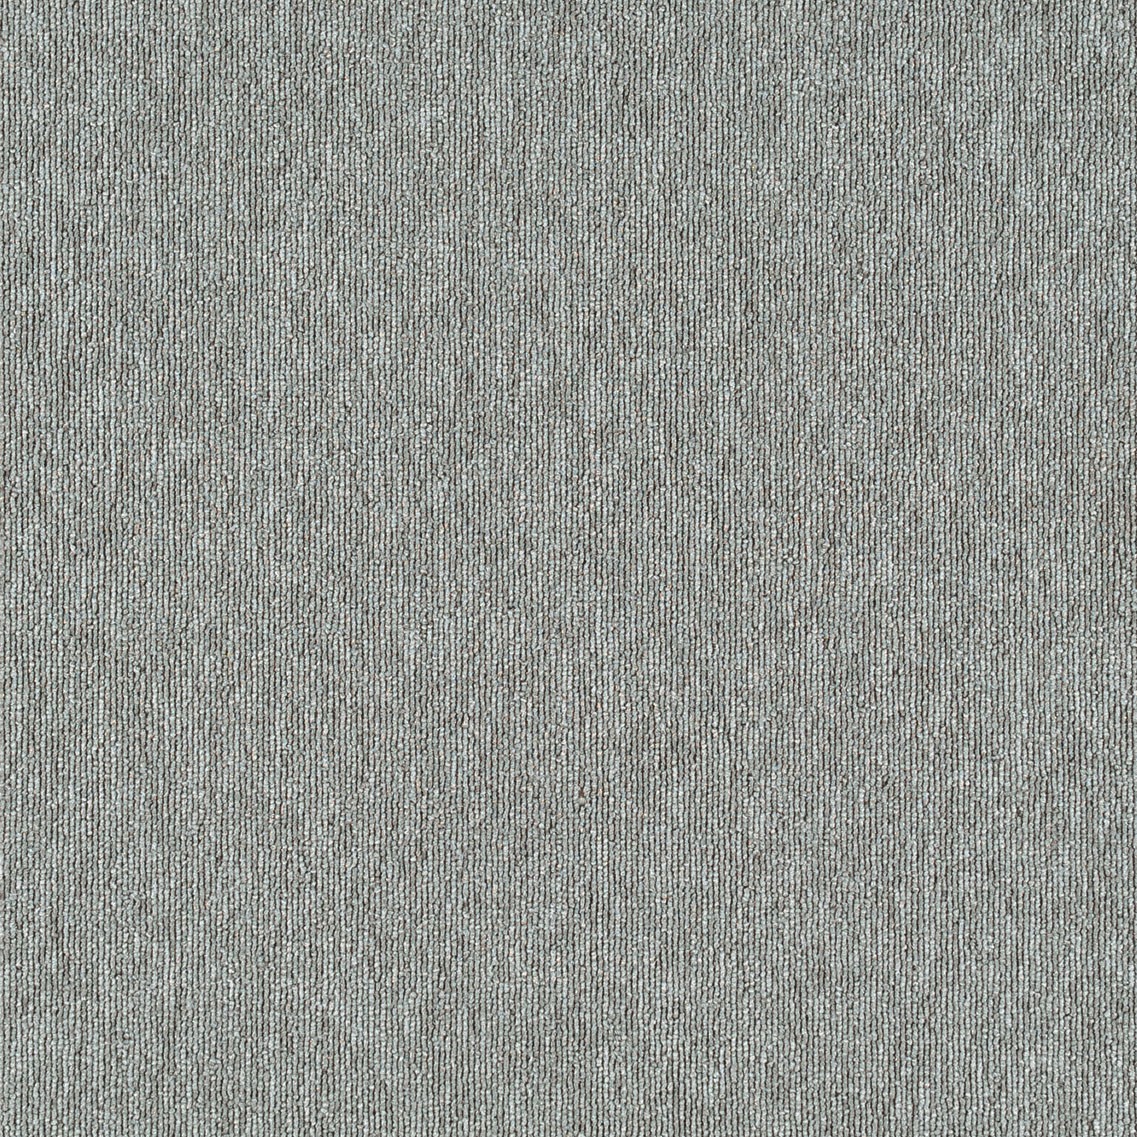 Nylon PVC Carpet Squares